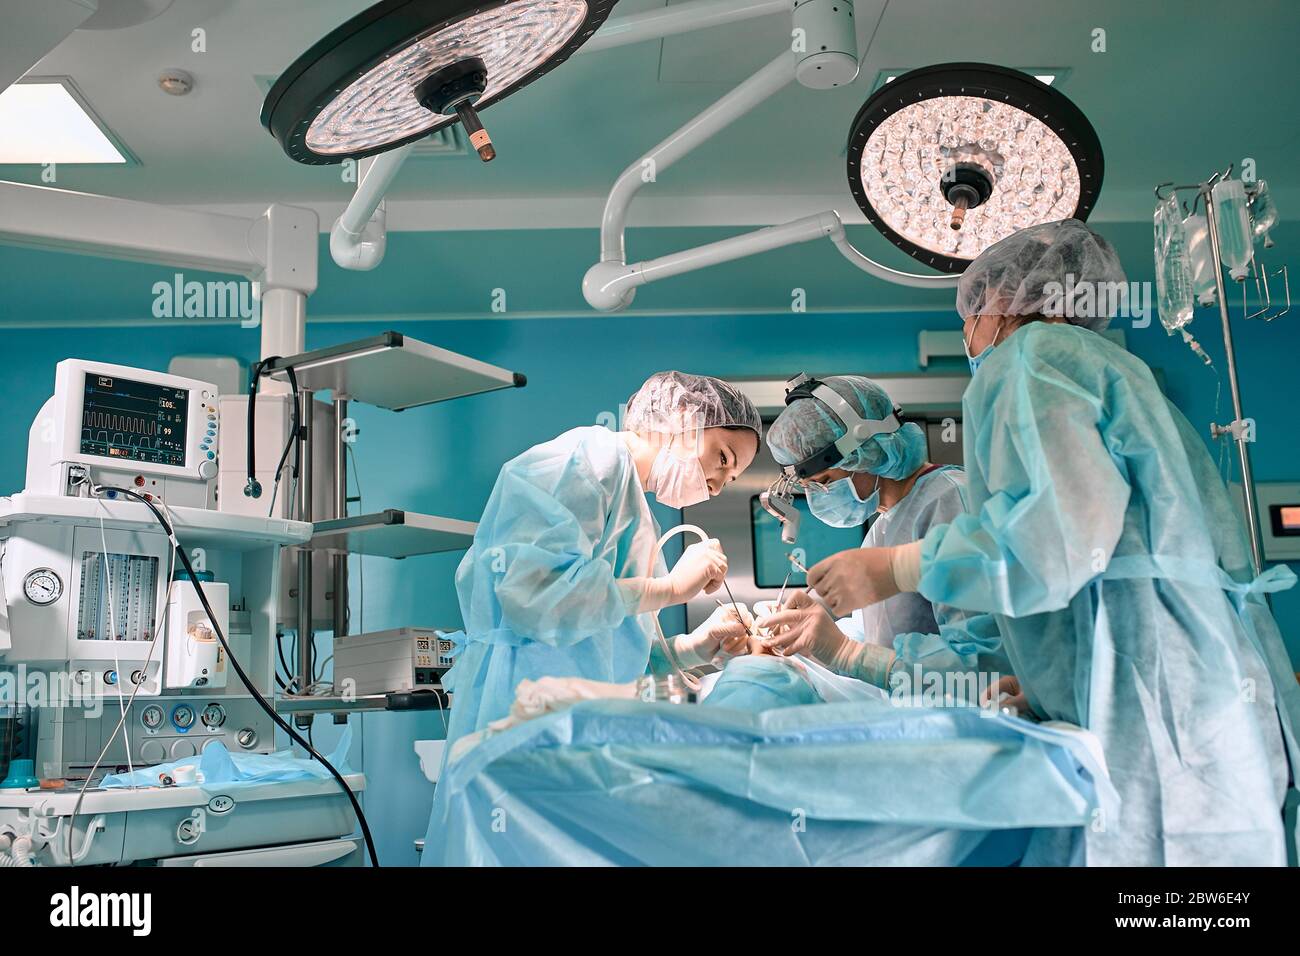 Moderne Chirurgie in einem technologisch fortgeschrittenen Krankenhaus. Heller Raum der Intensivpflege. Ärzte und Assistenten, die im Operationssaal arbeiten, retten Leben. Stockfoto